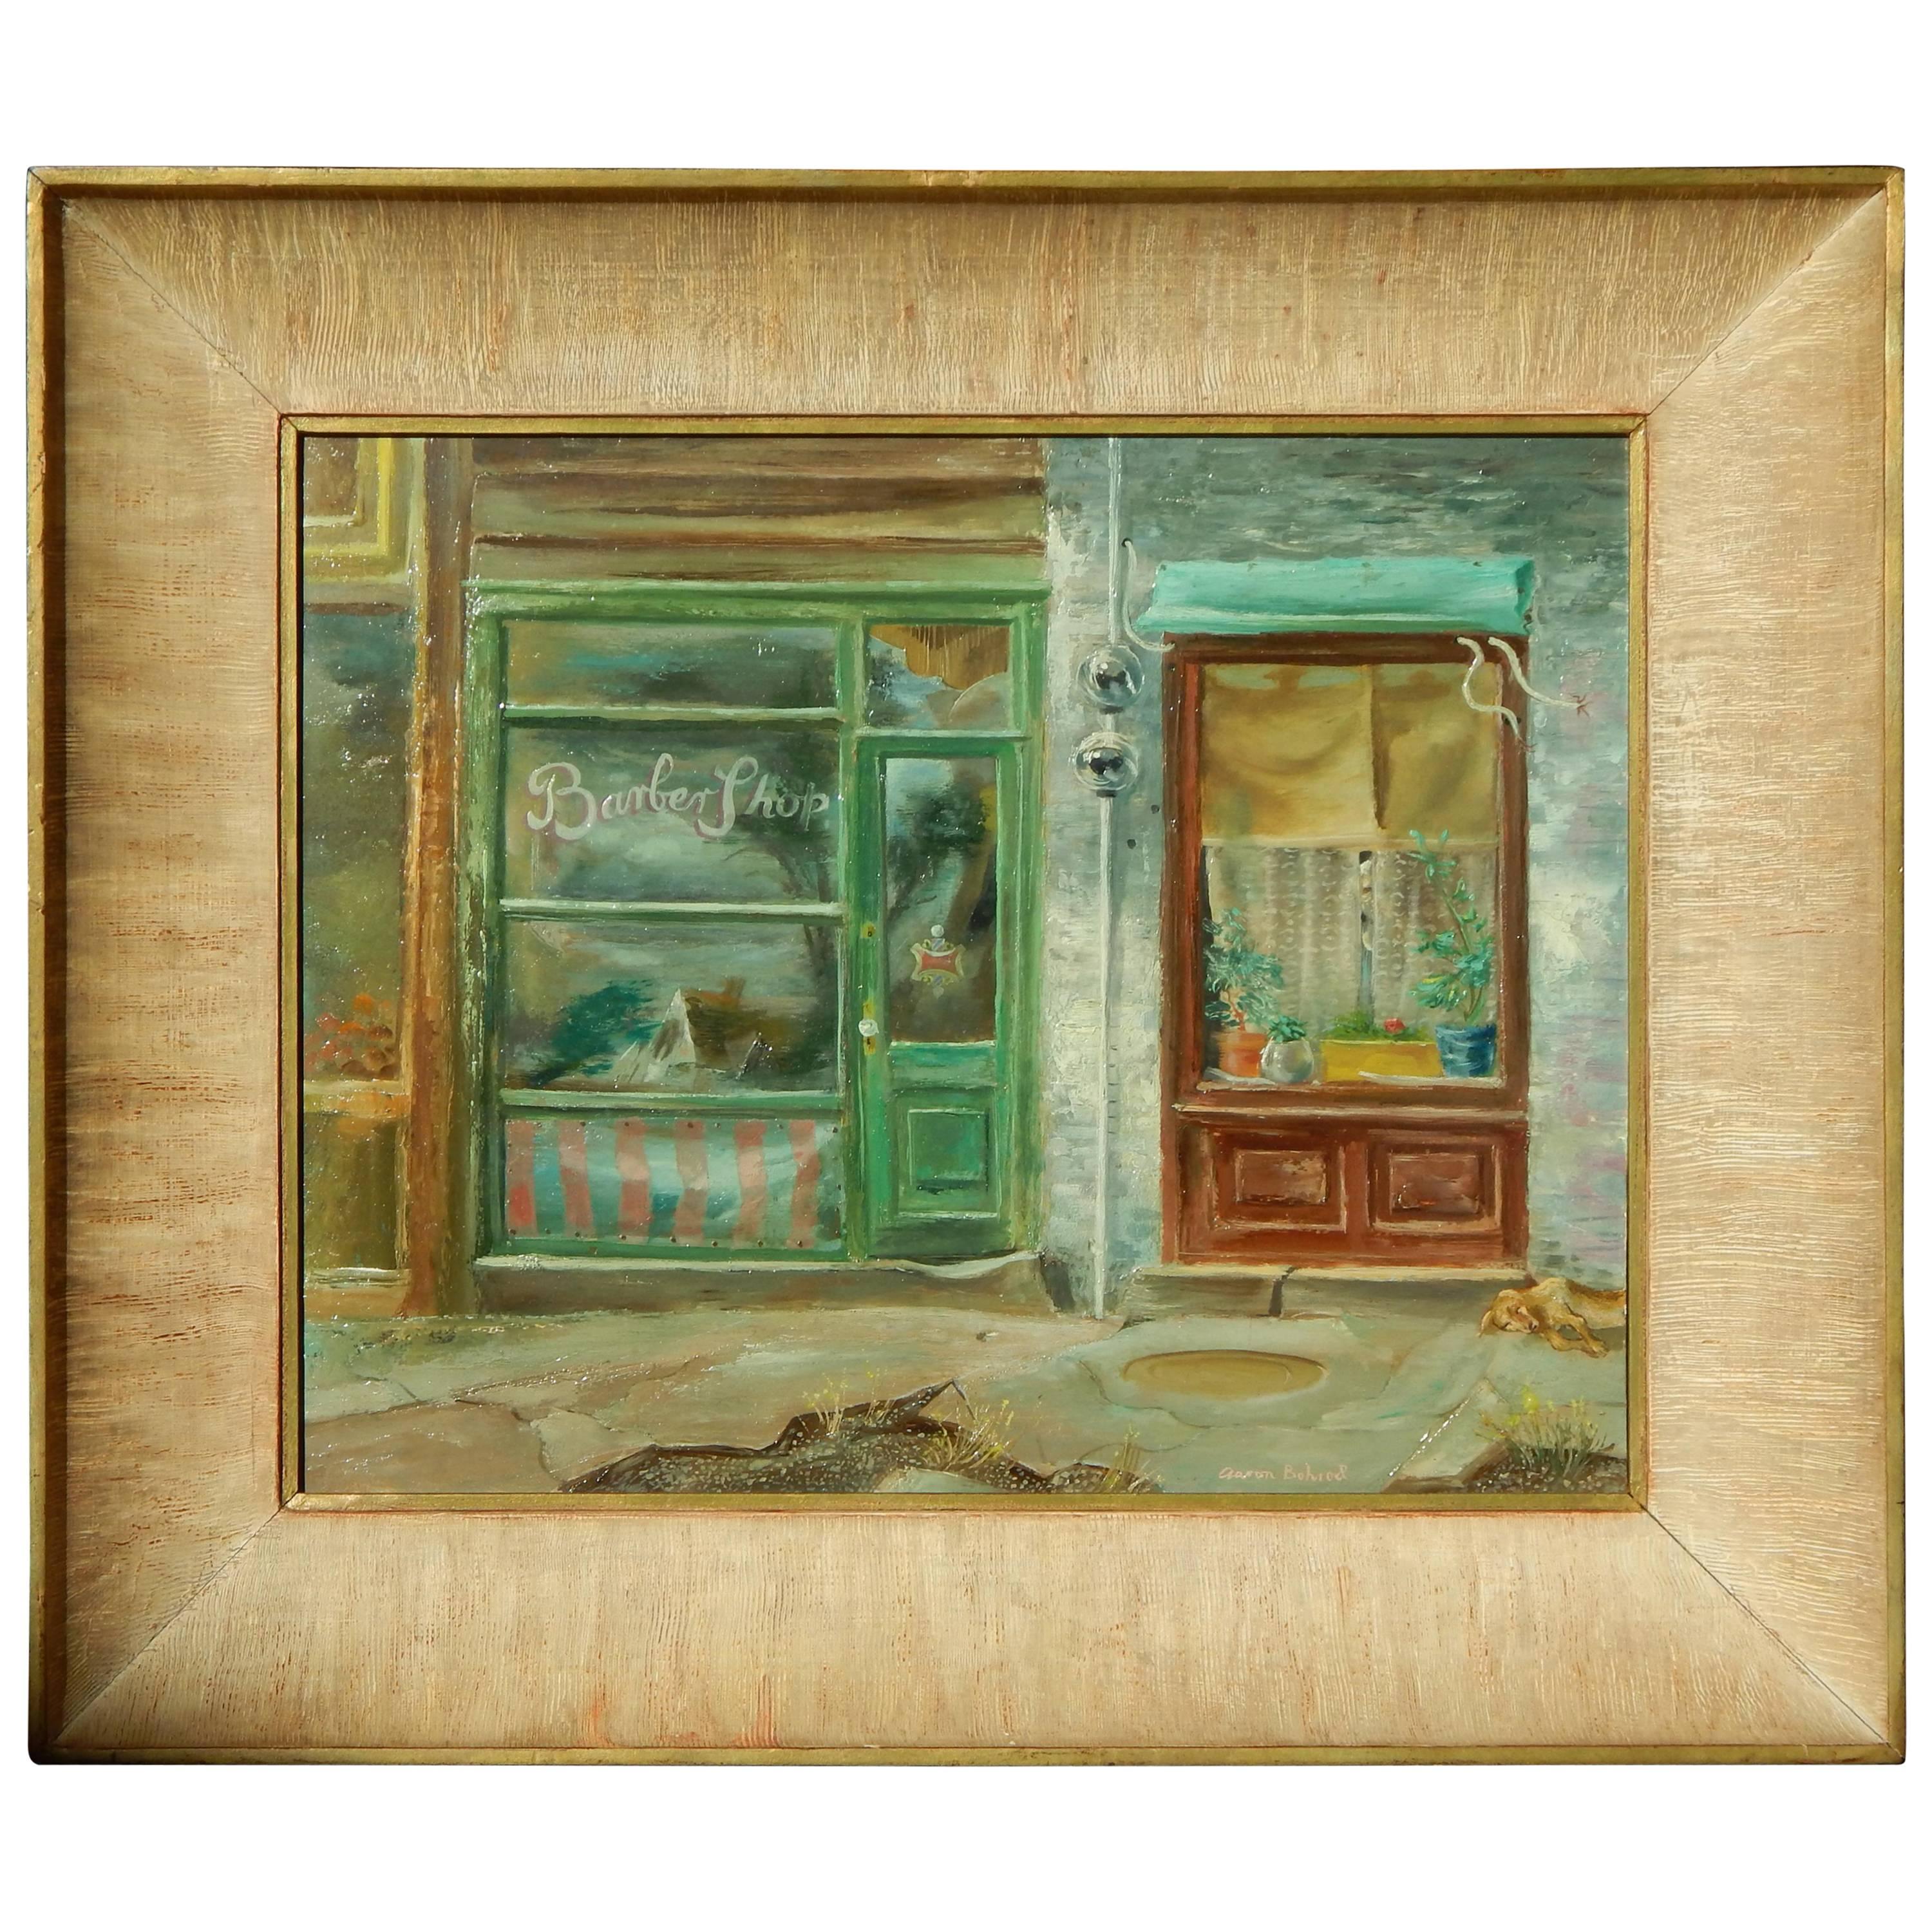 Peinture à l'huile de l'artiste Aaron Bohrod, artiste de Chicago/Wisconsin, datant des années 1940 environ, Shop Windows